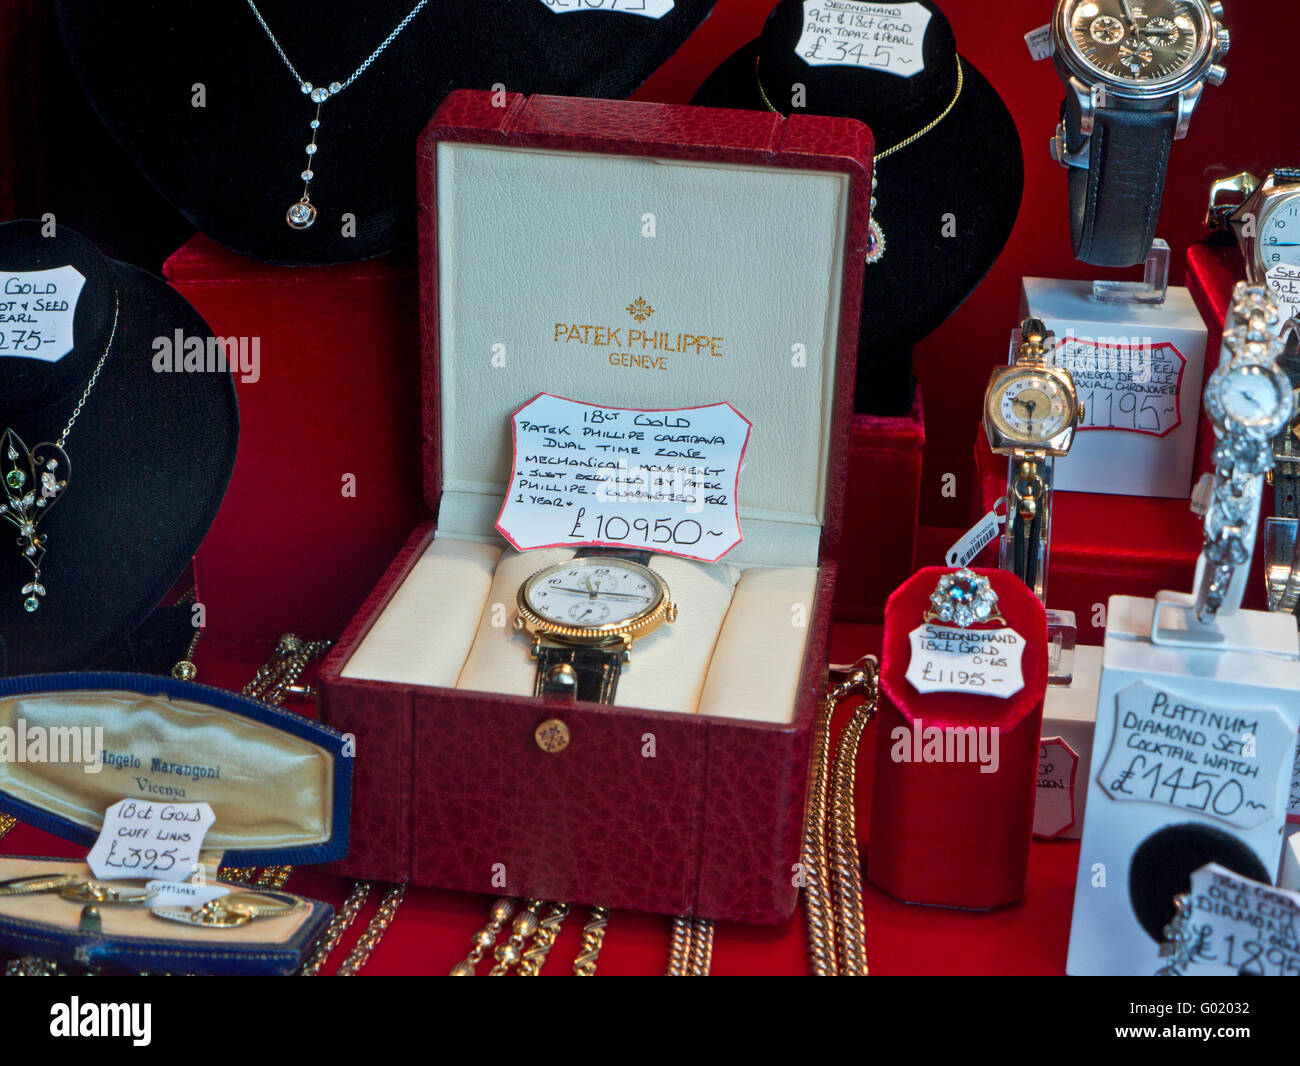 PATEK PHILLIPE Hochwertige gebrauchte Uhren einschließlich Patek Philippe  Schmuck Und Edelsteine zum Verkauf in Luxus antiken Juweliere Schaufenster  Stockfotografie - Alamy